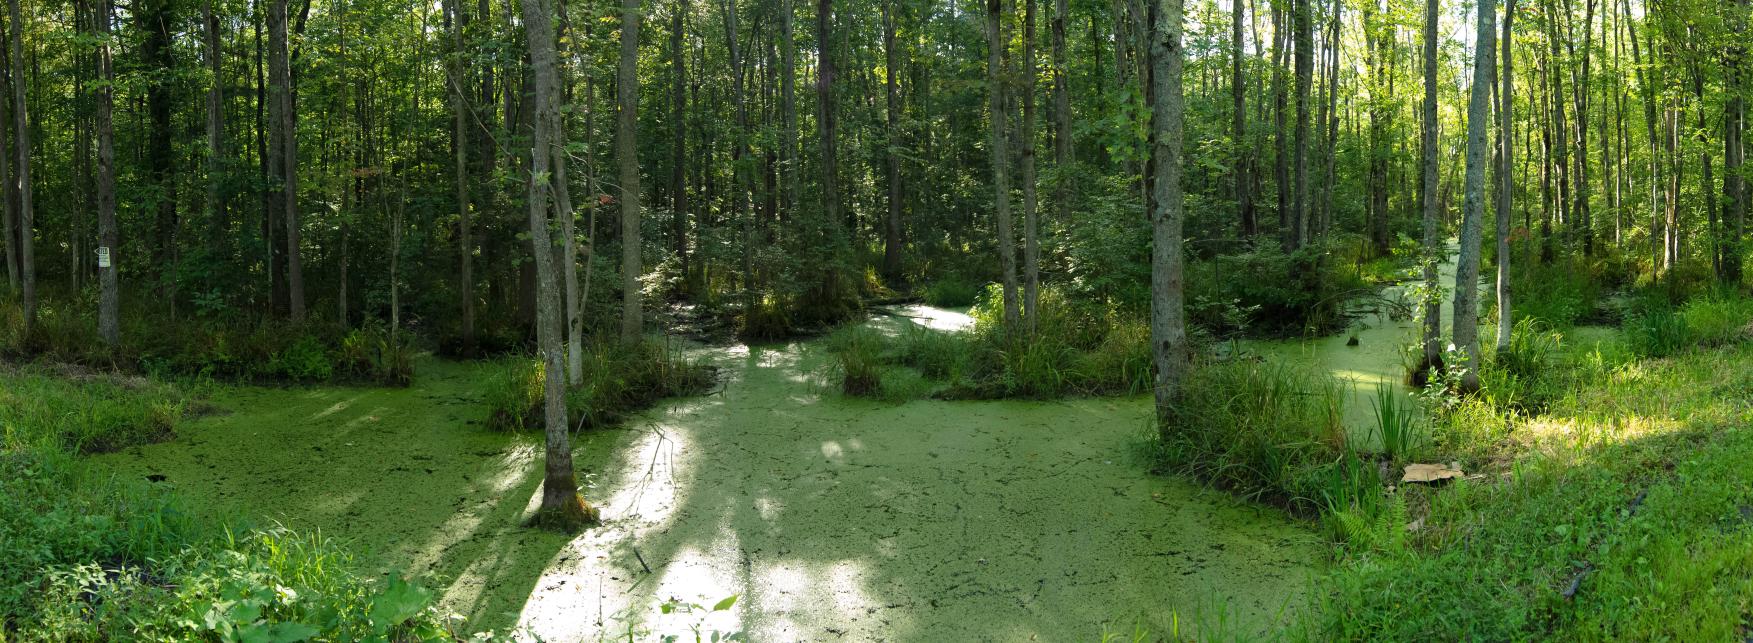 000-swamp_Panorama-th.jpg